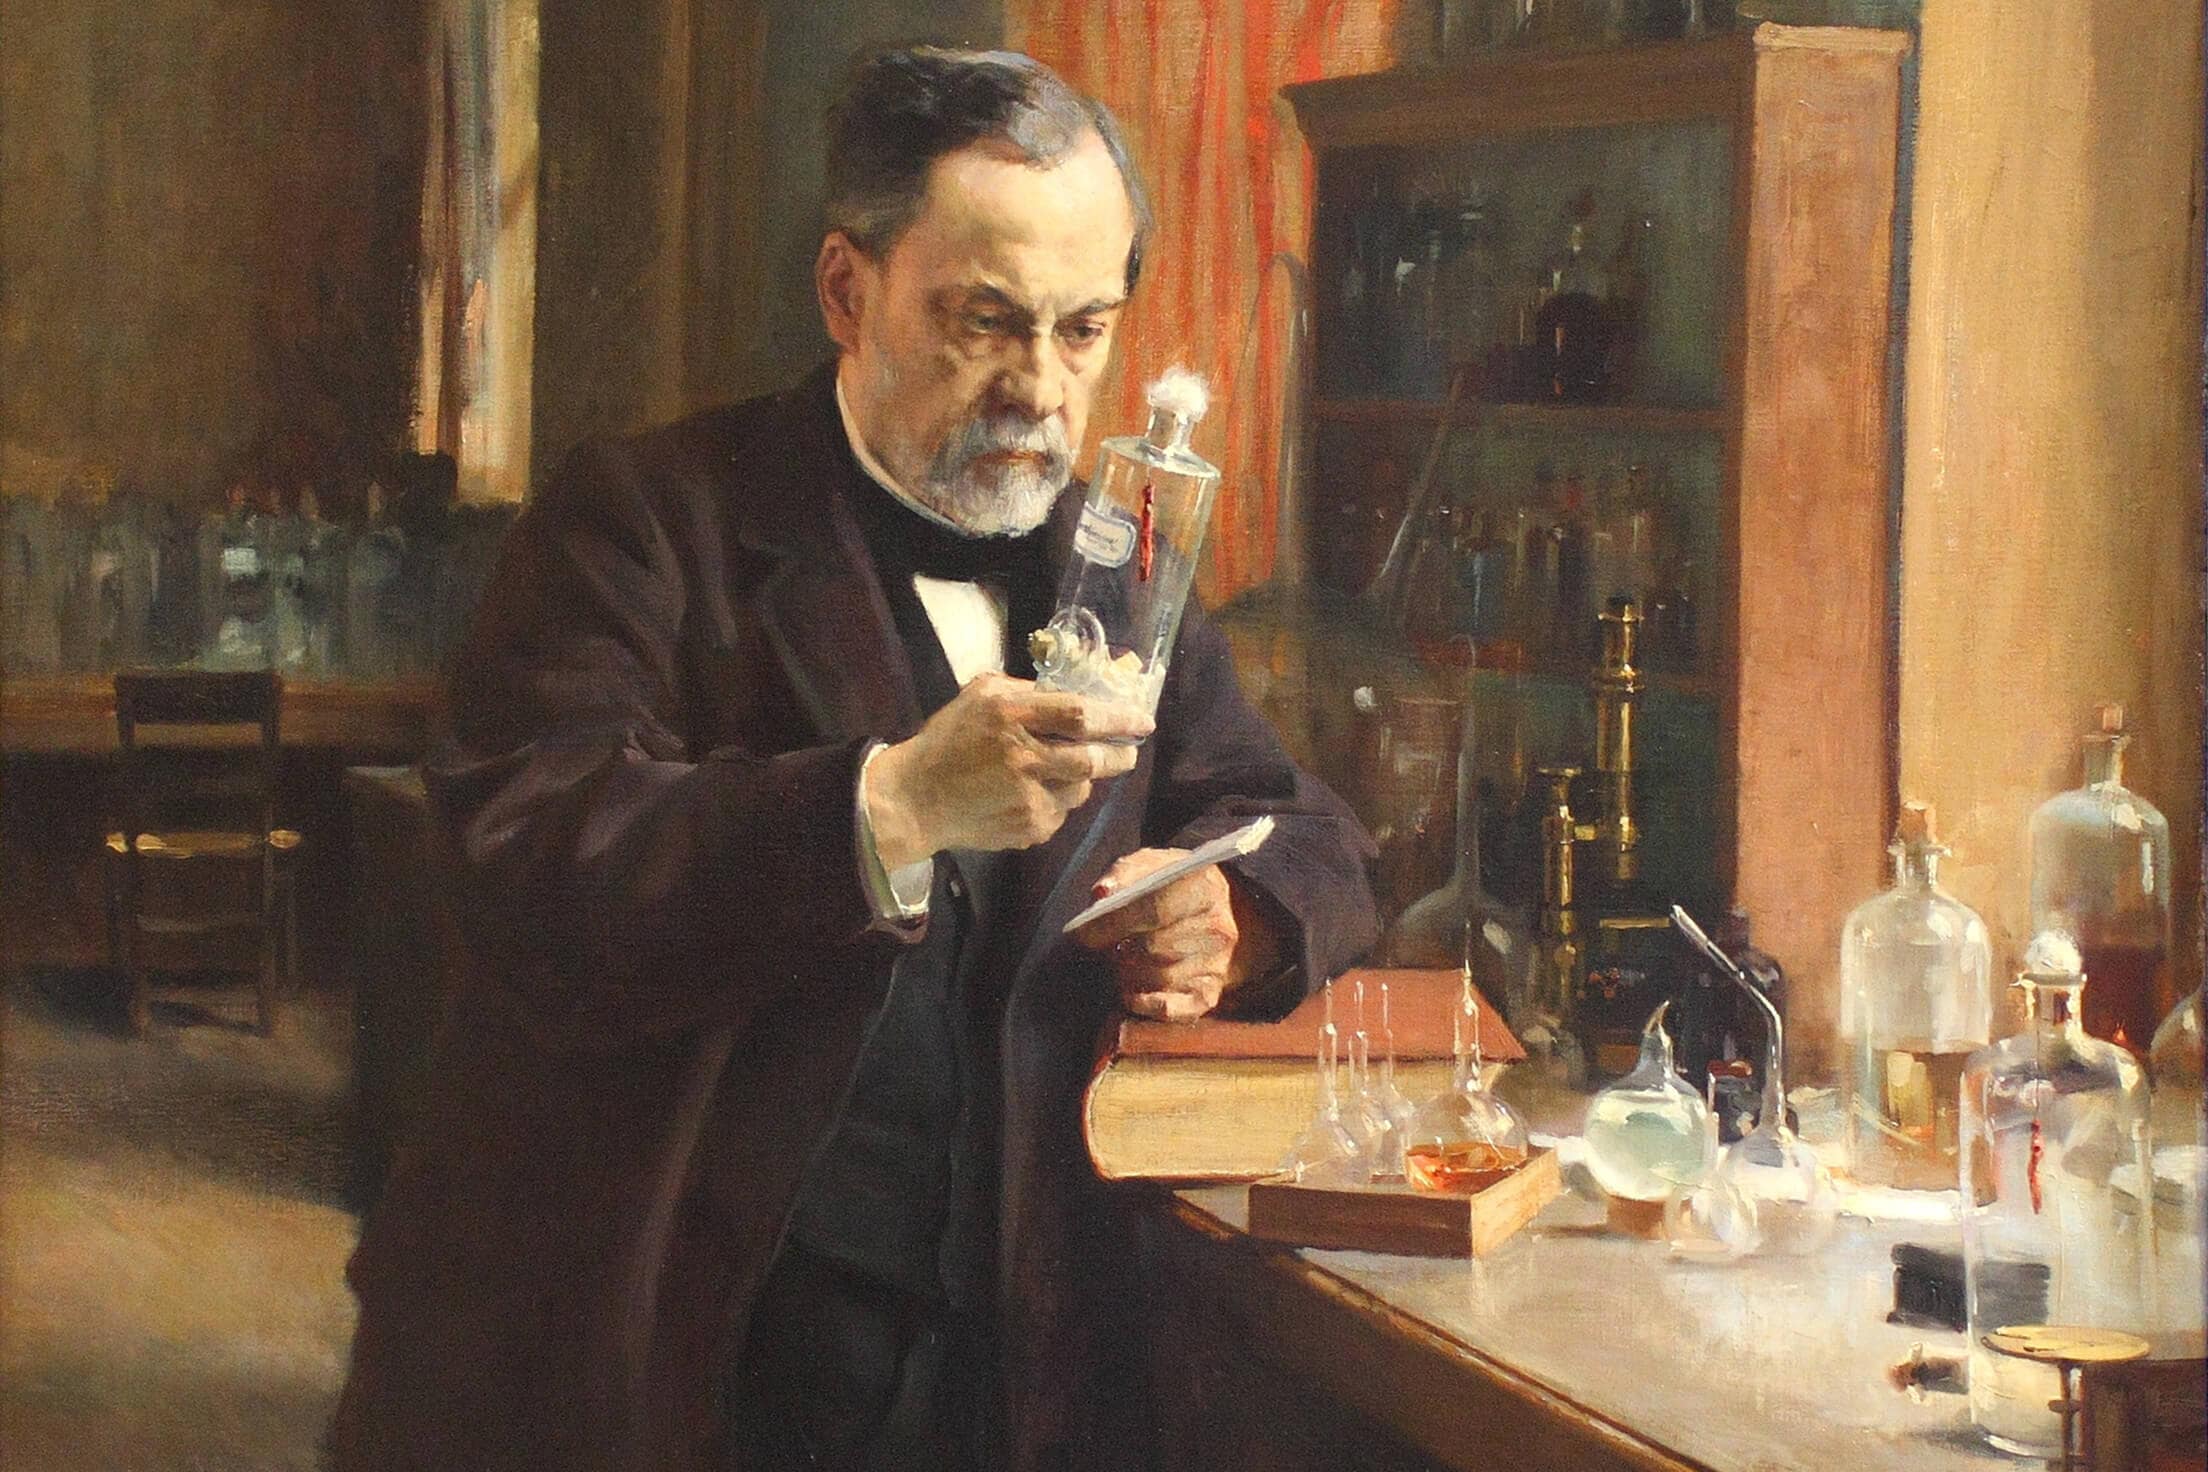  El Dr. Louis Pasteur en su laboratorio sostiene un frasco